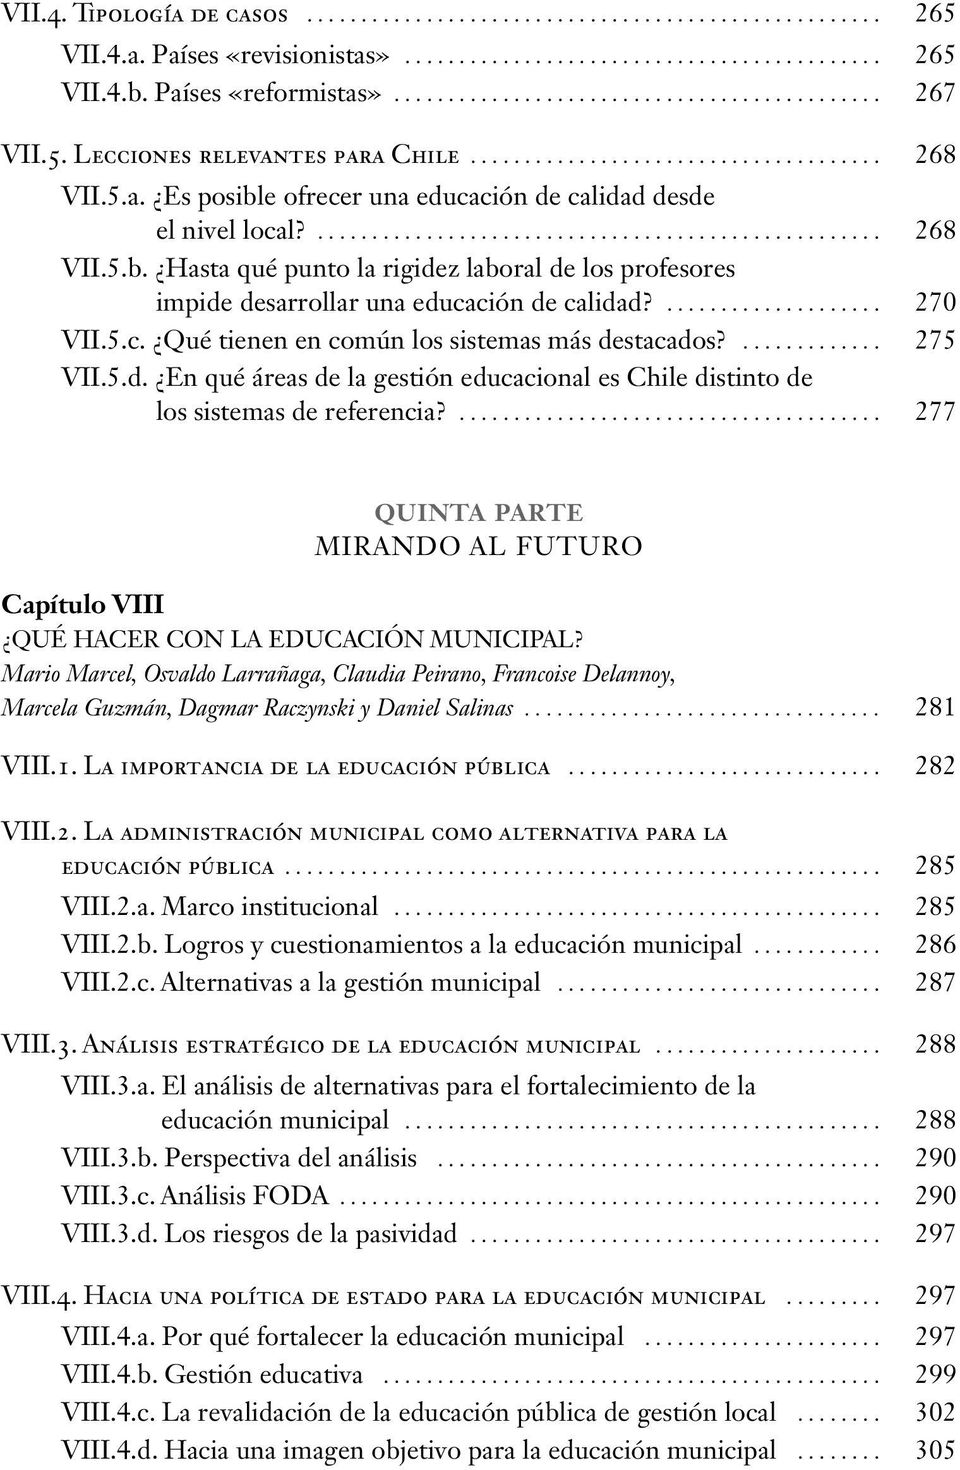 ... 270 VII.5.c. Qué tienen en común los sistemas más destacados?............. 275 VII.5.d. En qué áreas de la gestión educacional es Chile distinto de los sistemas de referencia?